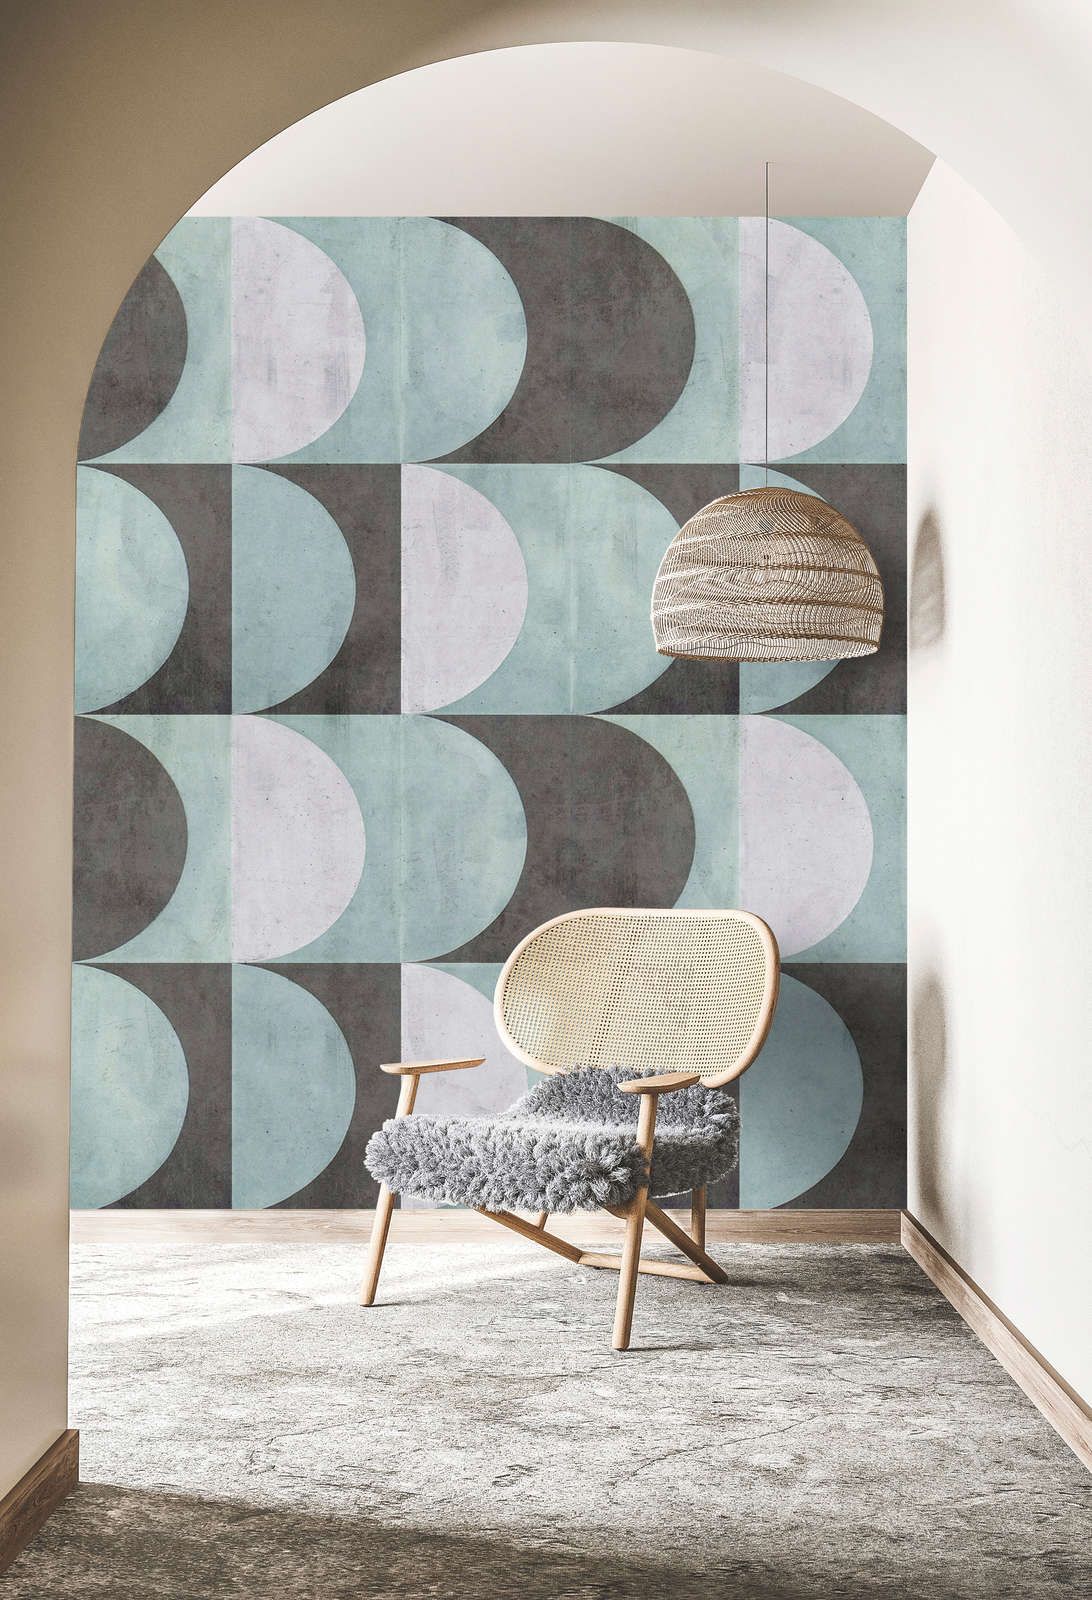             Digital behang »julek 2« - retro patroon in betonlook - mintgroen, grijs | Licht structuurvlies
        